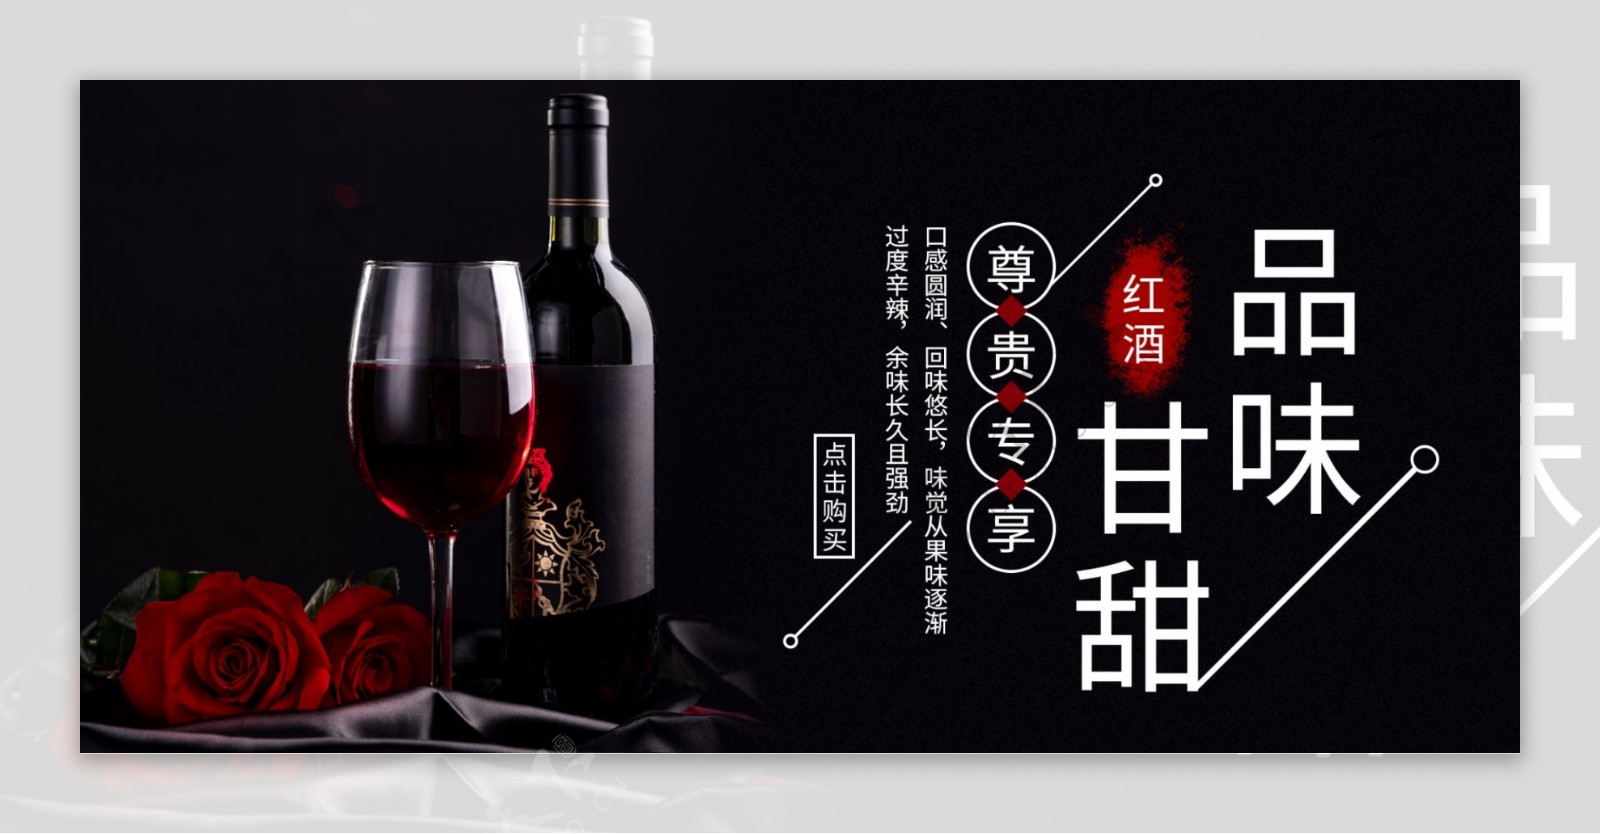 淘宝电商红酒banner海报